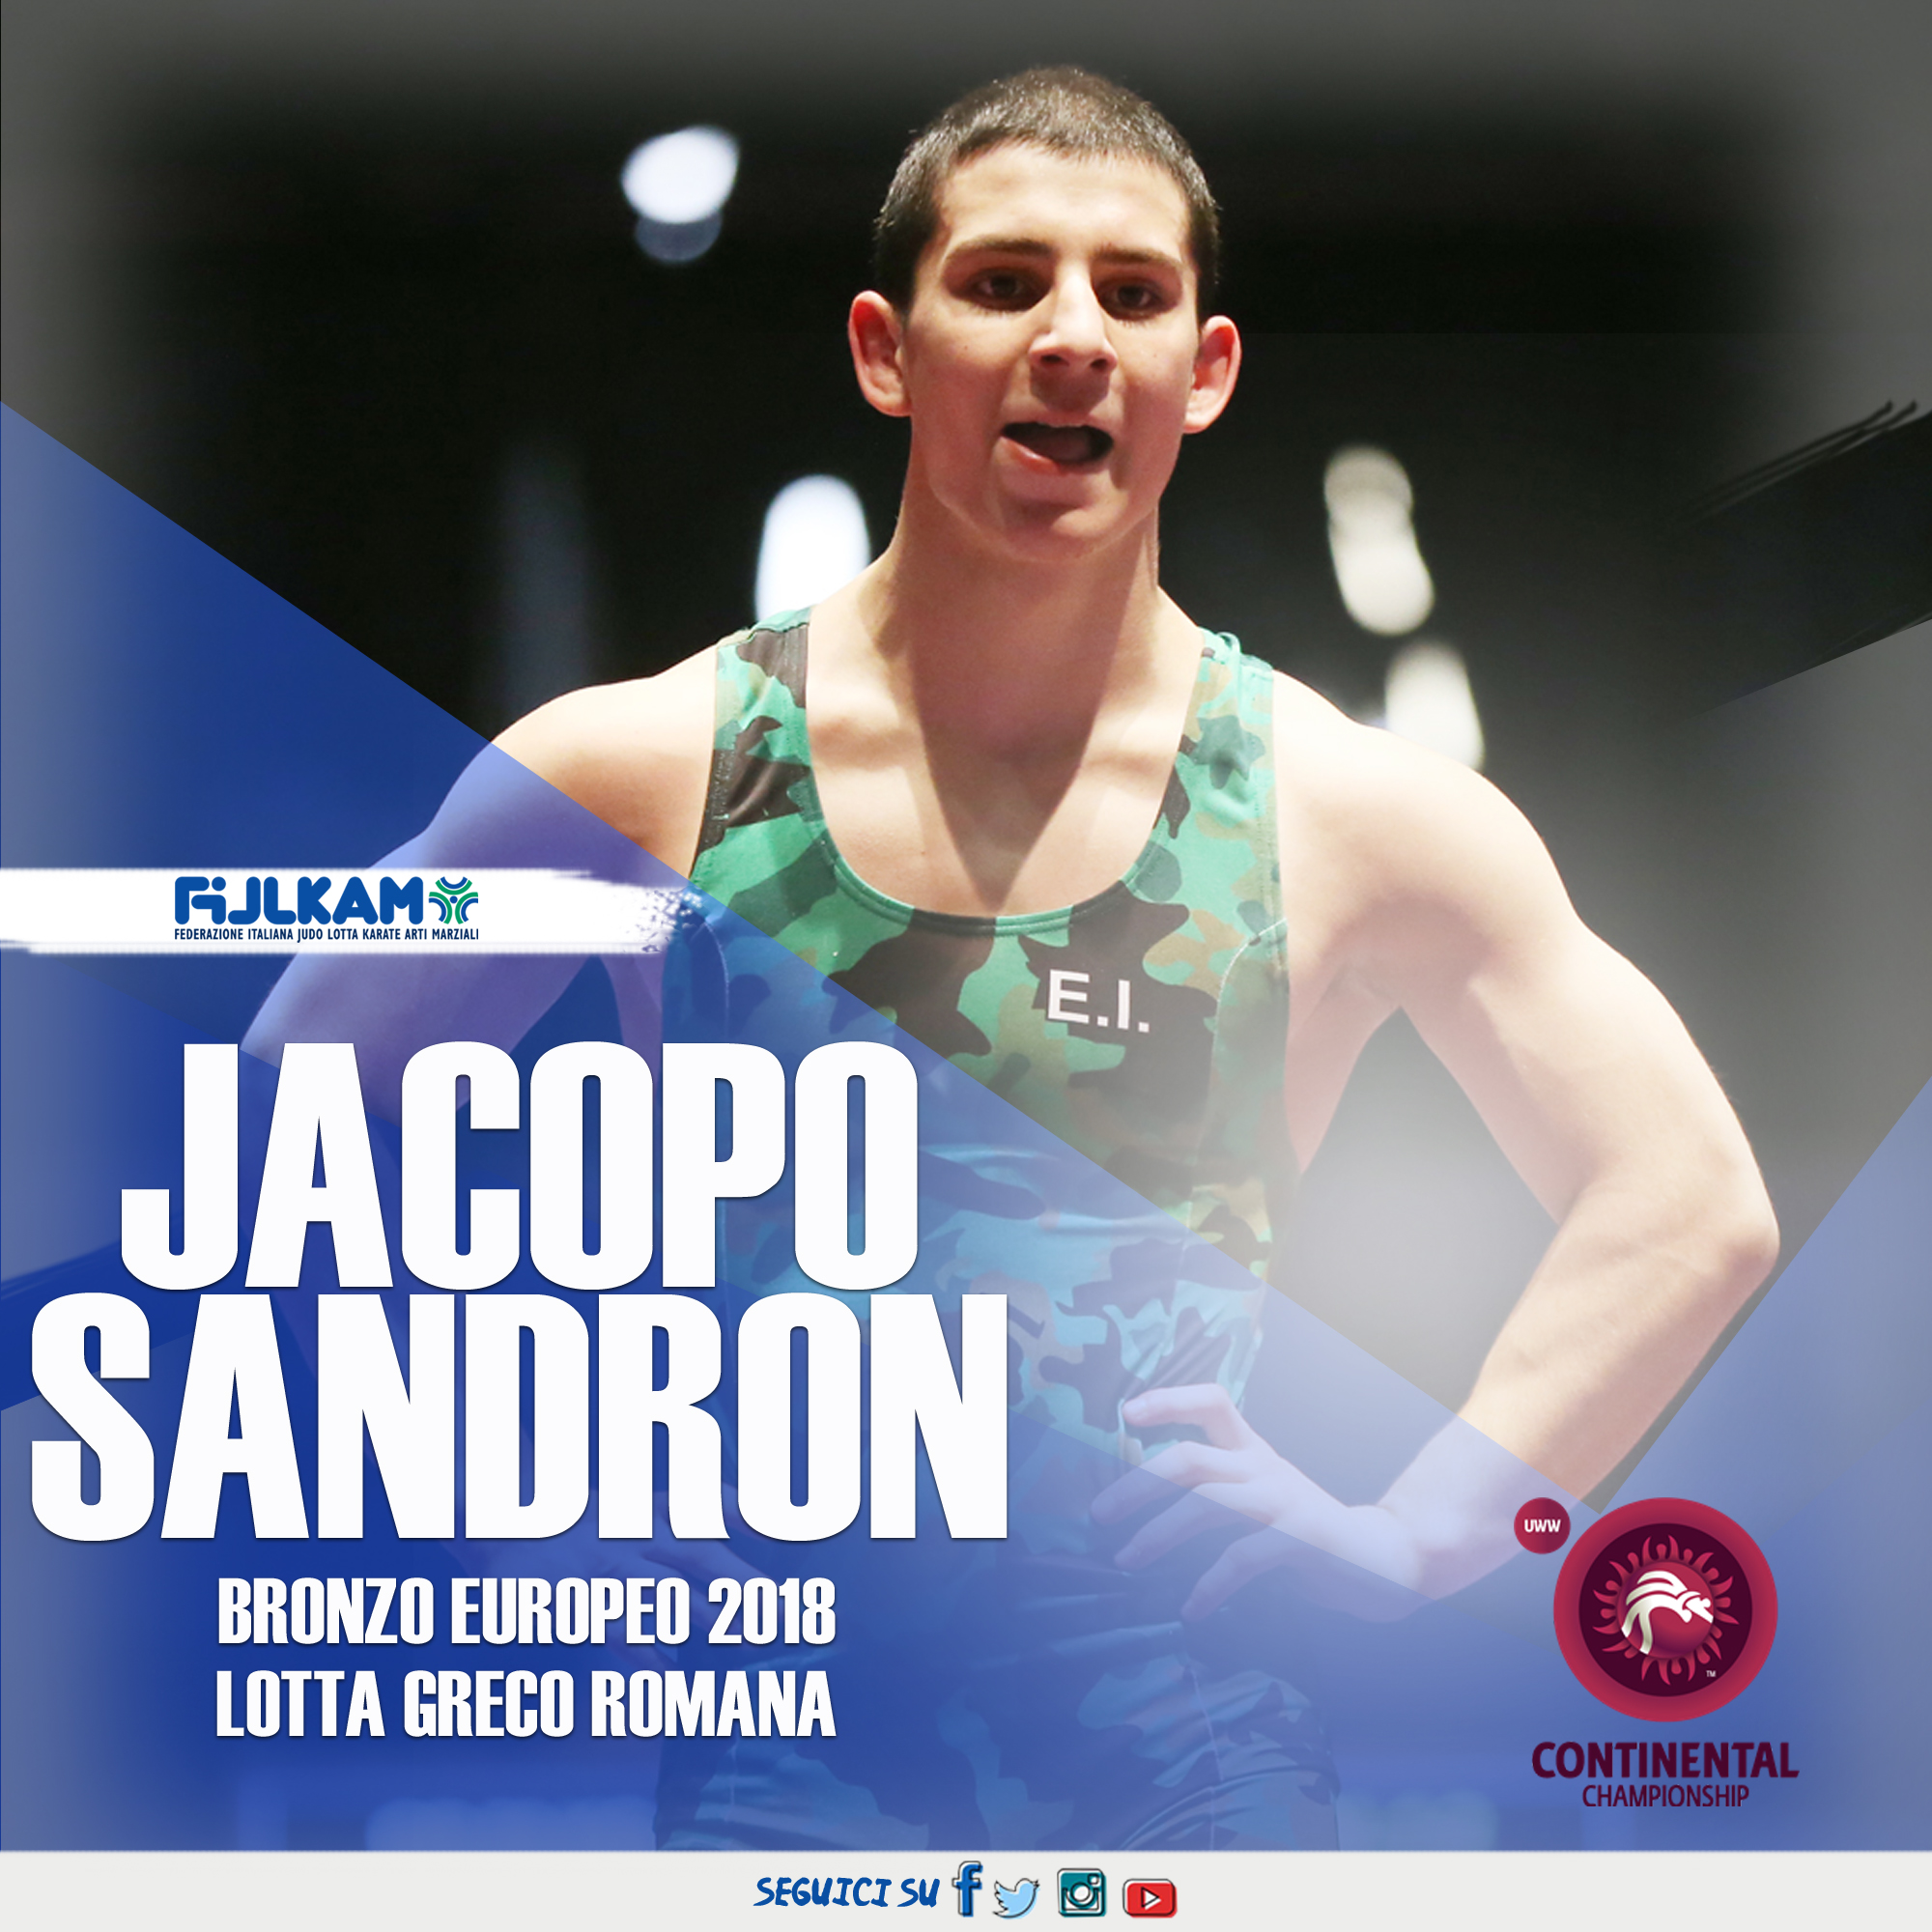 Live Europei: Sandron vince la medaglia di bronzo nella Greco Romana battendo il bielorusso Kazharski